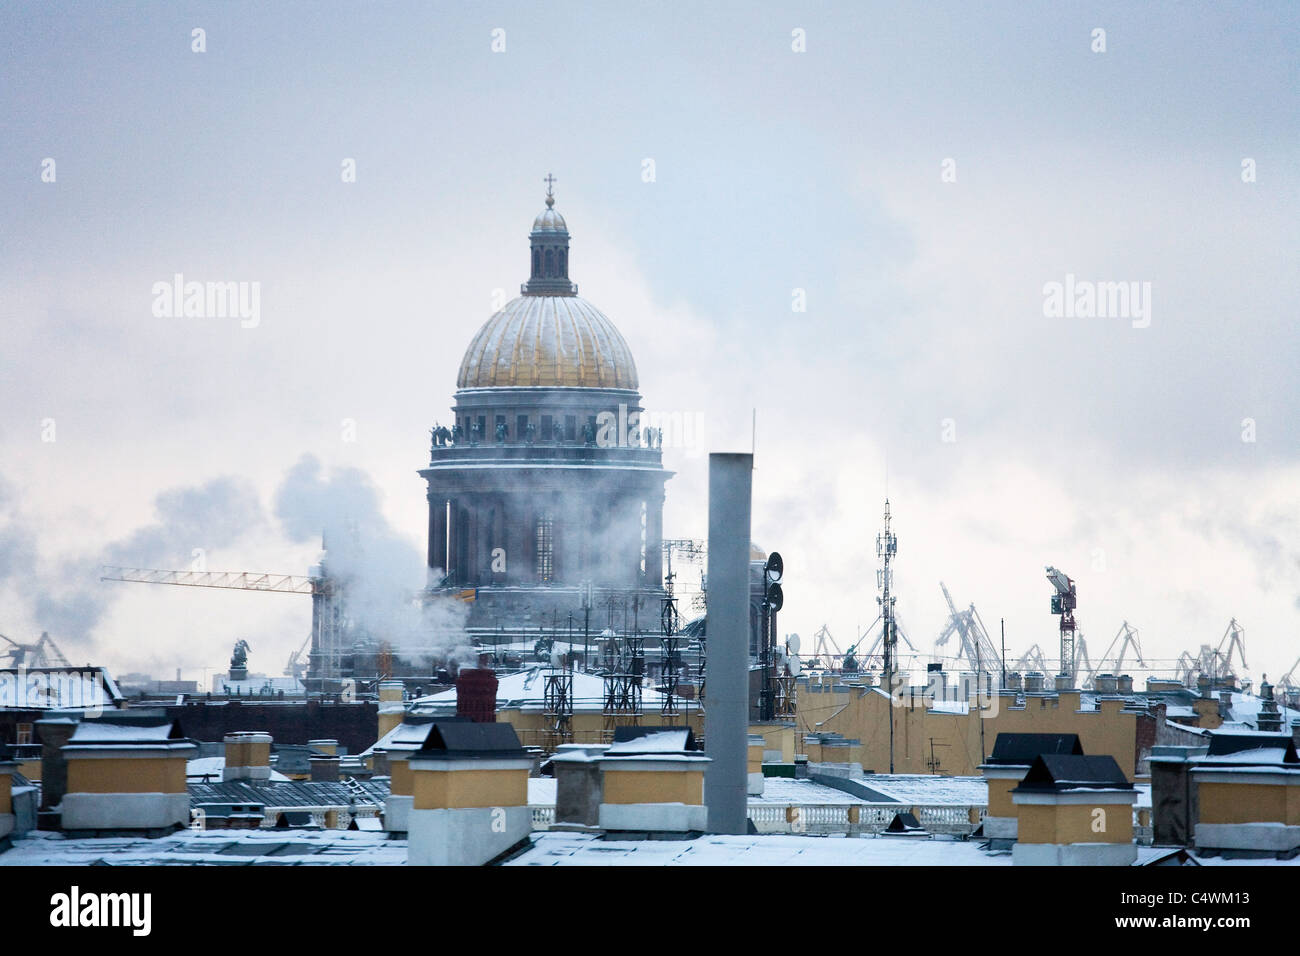 La Cathédrale St Isaac sur les toits, Saint Petersburg Russie Banque D'Images